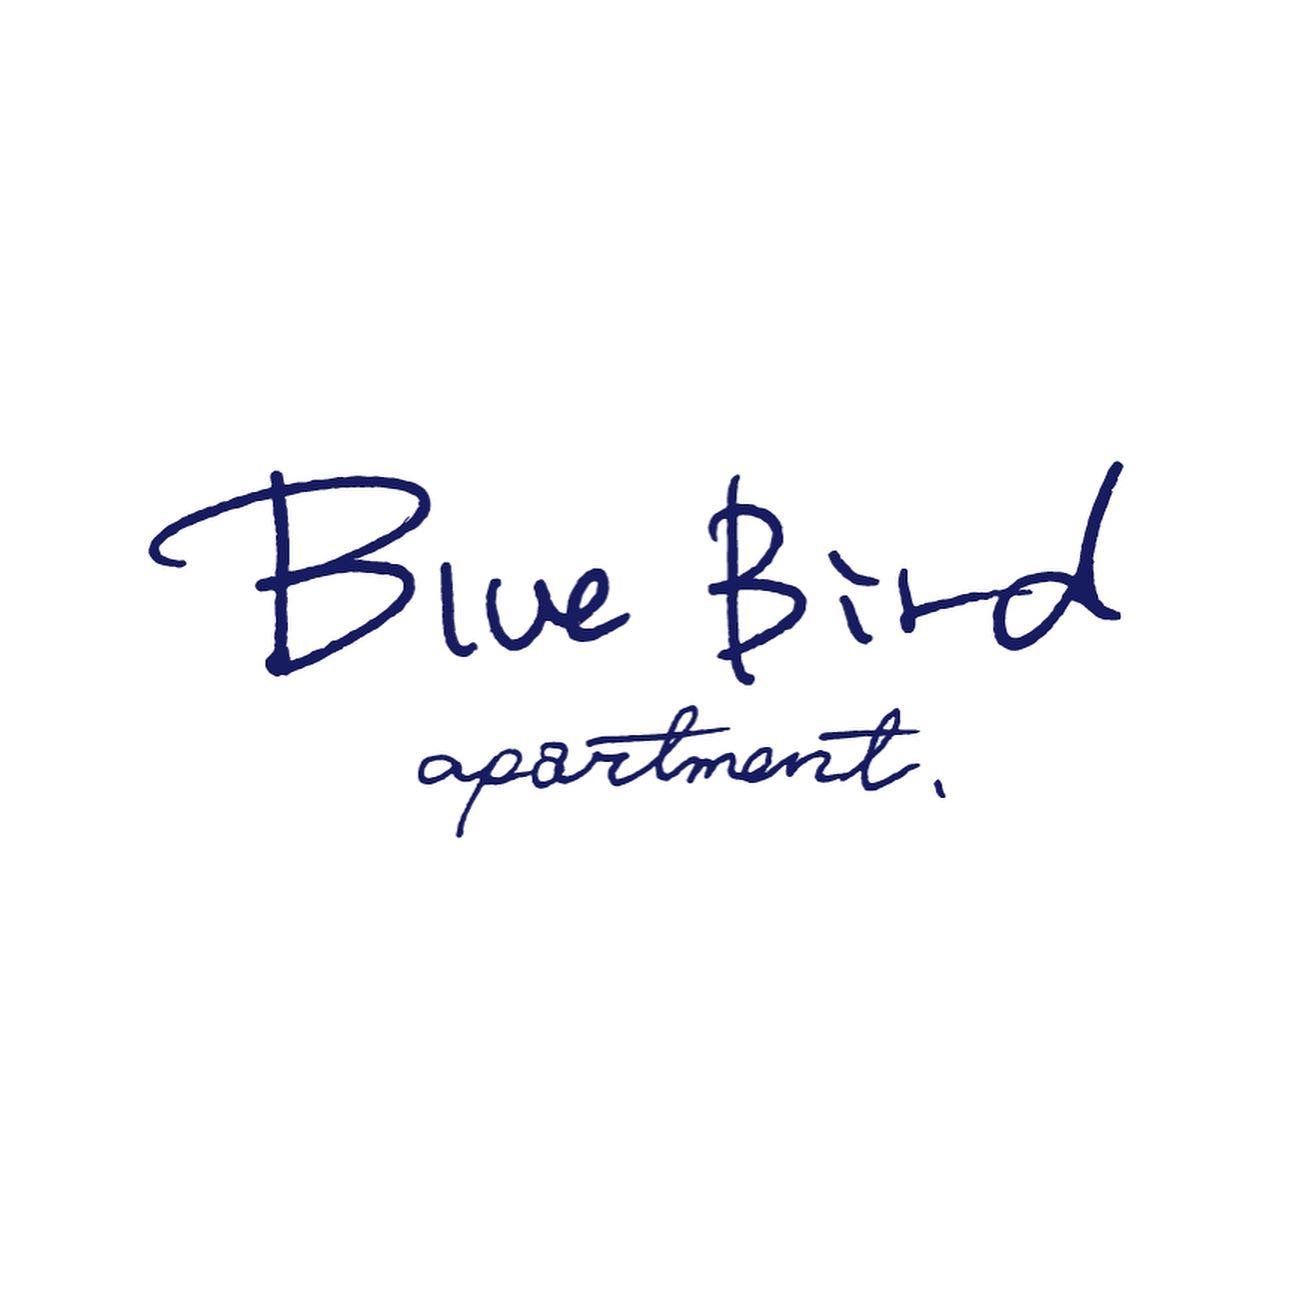 ・出展者紹介！・@bluebird_apartment ・Blue Bird apartment.（ブルーバードアパートメント）は、郡山市清水台にある喫茶室です。 全国にある「日本の美味しい」をテーマに新しい発見を月替りでご提案。ハンドドリップのコーヒーのほか、温かいお飲み物をご準備しています。ぜひ、お立ち寄りください。